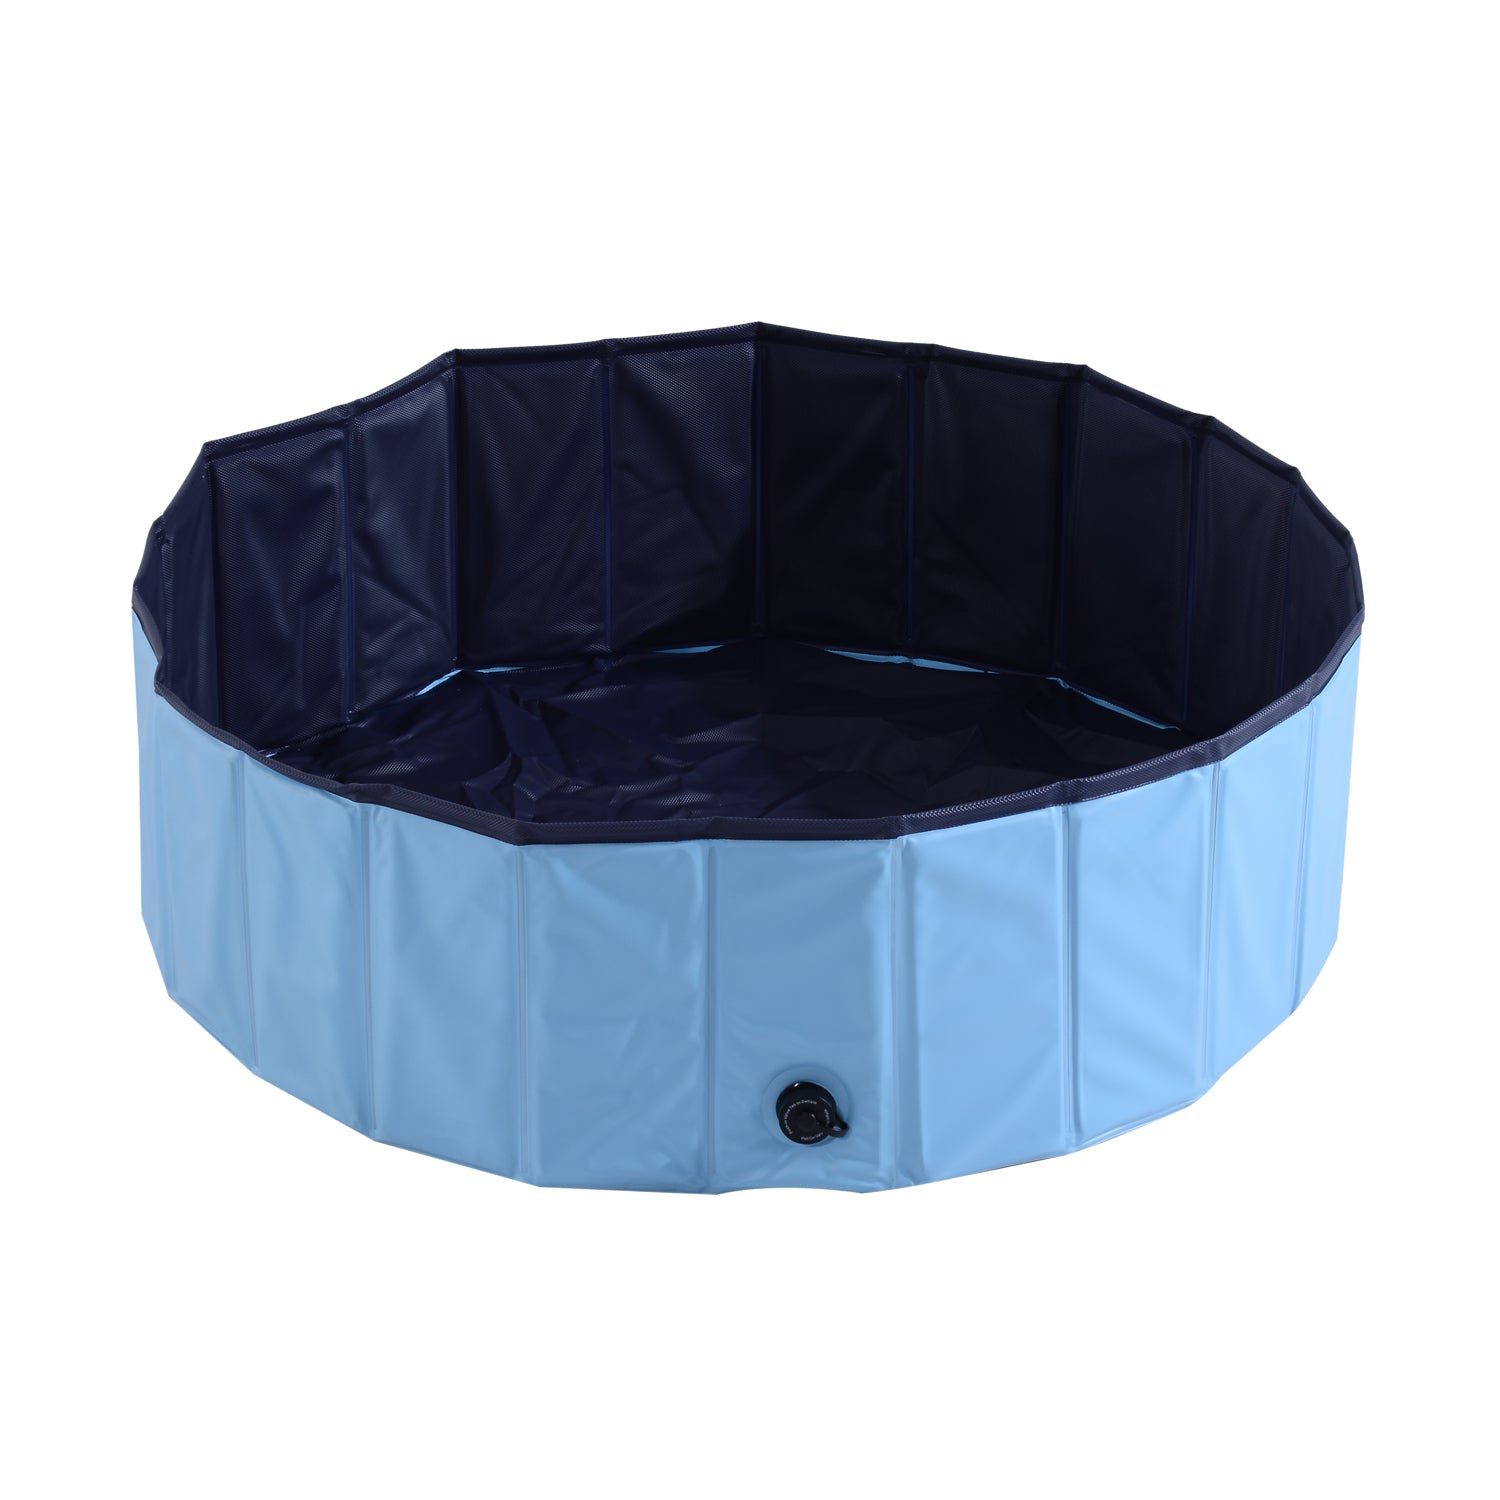 Φ100x30H cm Pet Swimming Pool-Blue